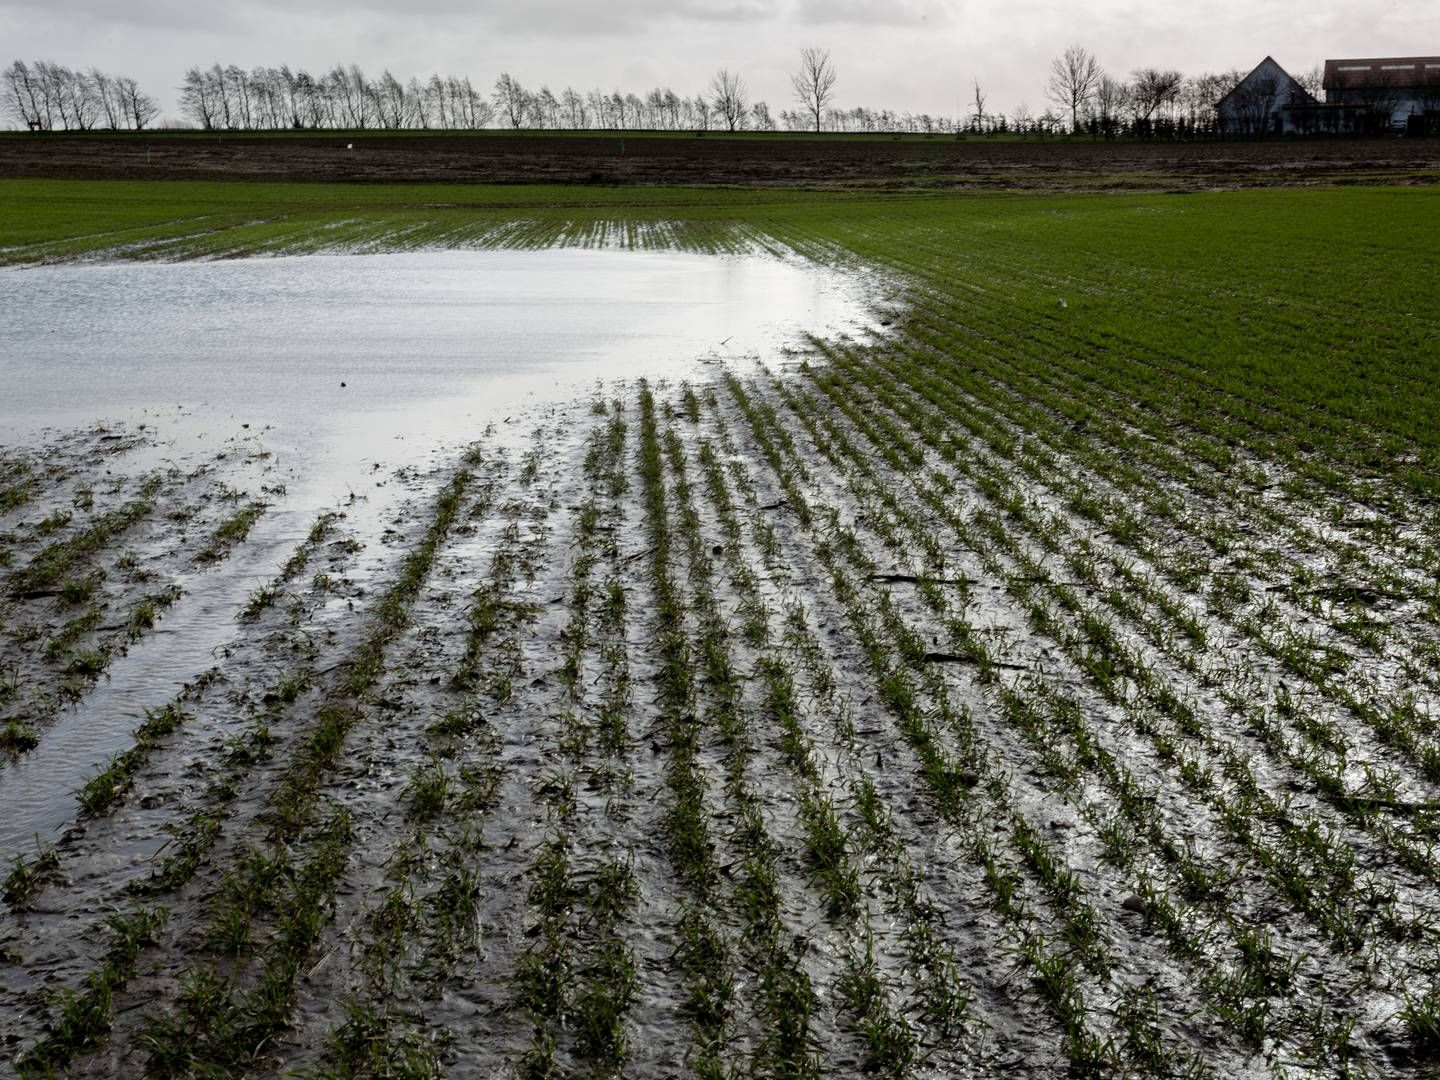 Landbrugsjorden har de seneste år været i høj kurs hos energiselskaberne. | Foto: Mads Nissen